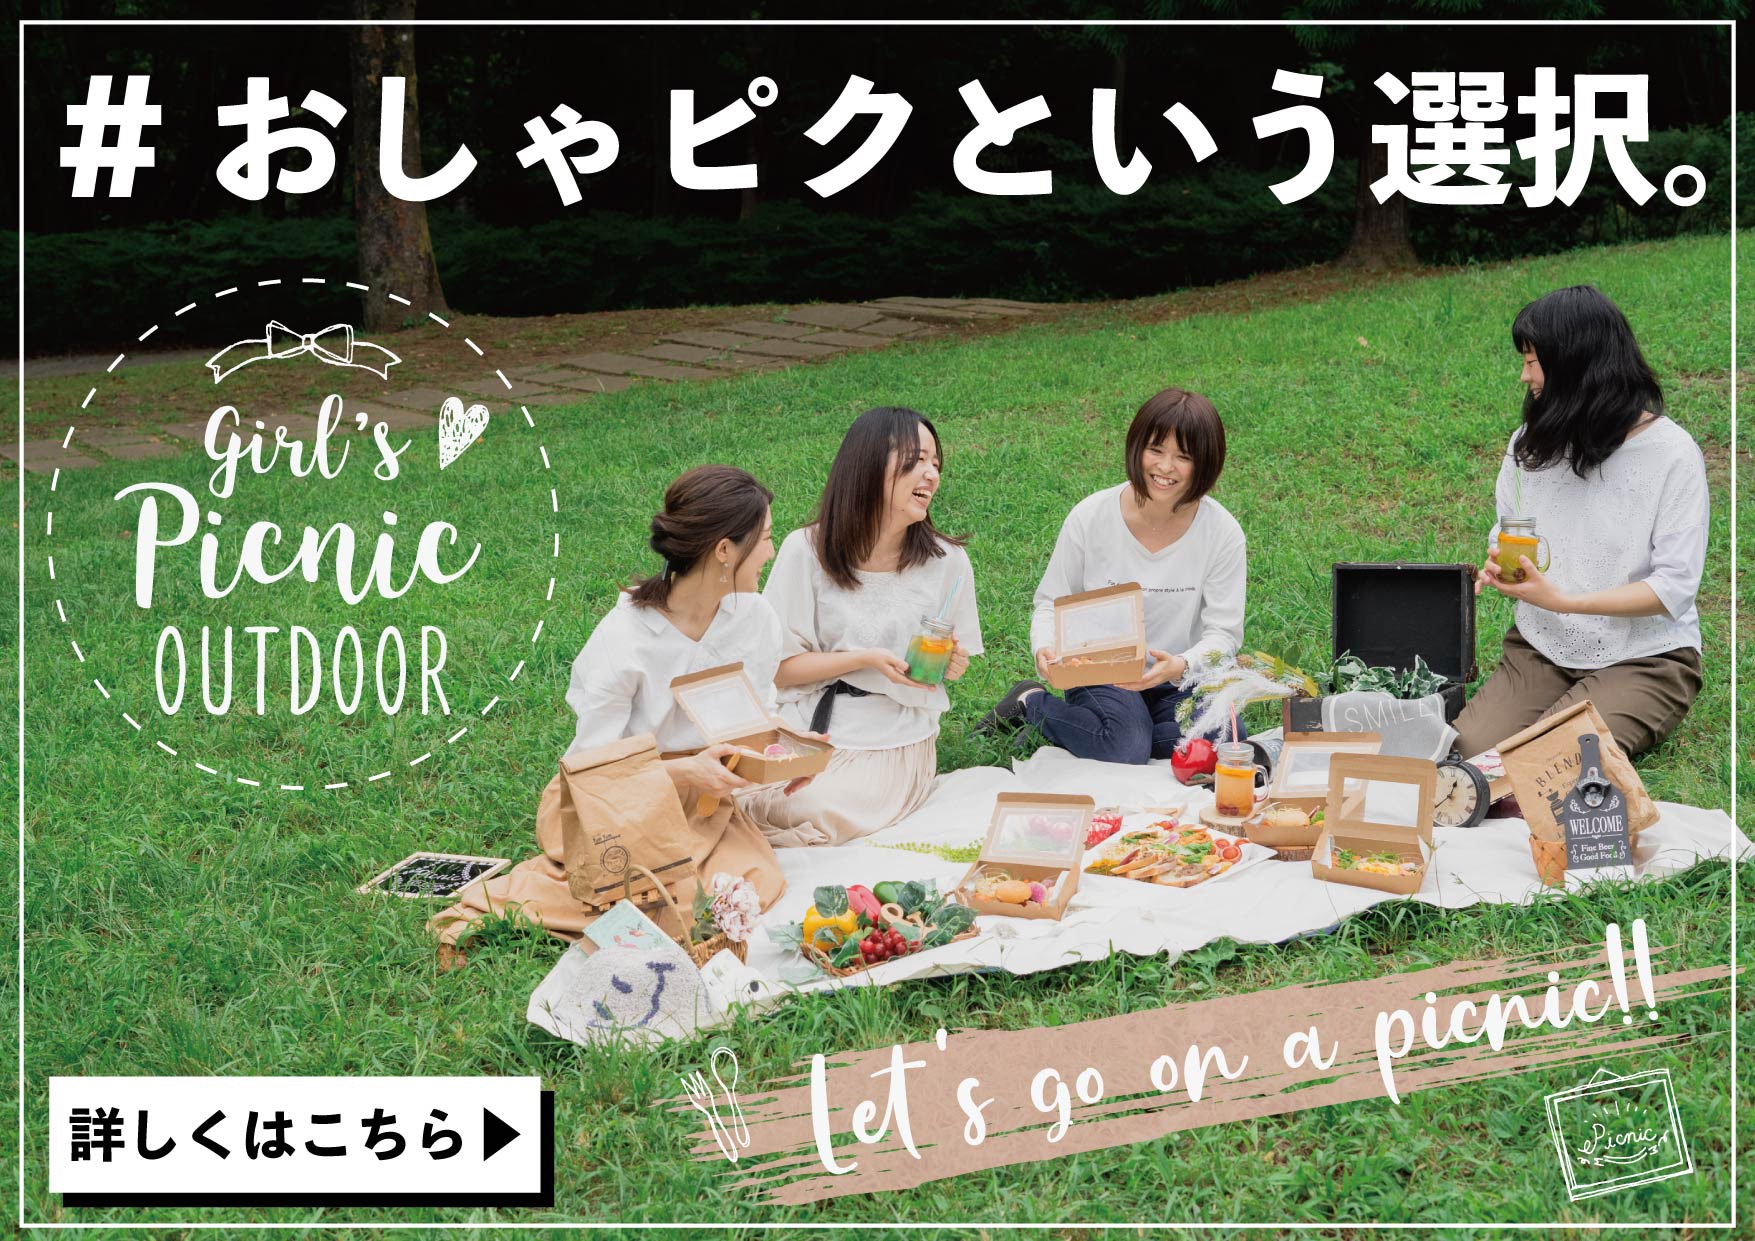 おしゃピクが今 アツい かわいいピクニックボックスをデリバリーしておしゃれピクニック オードブル宅配ならネオダイニング 東京で人気のおしゃれなフィンガーフード